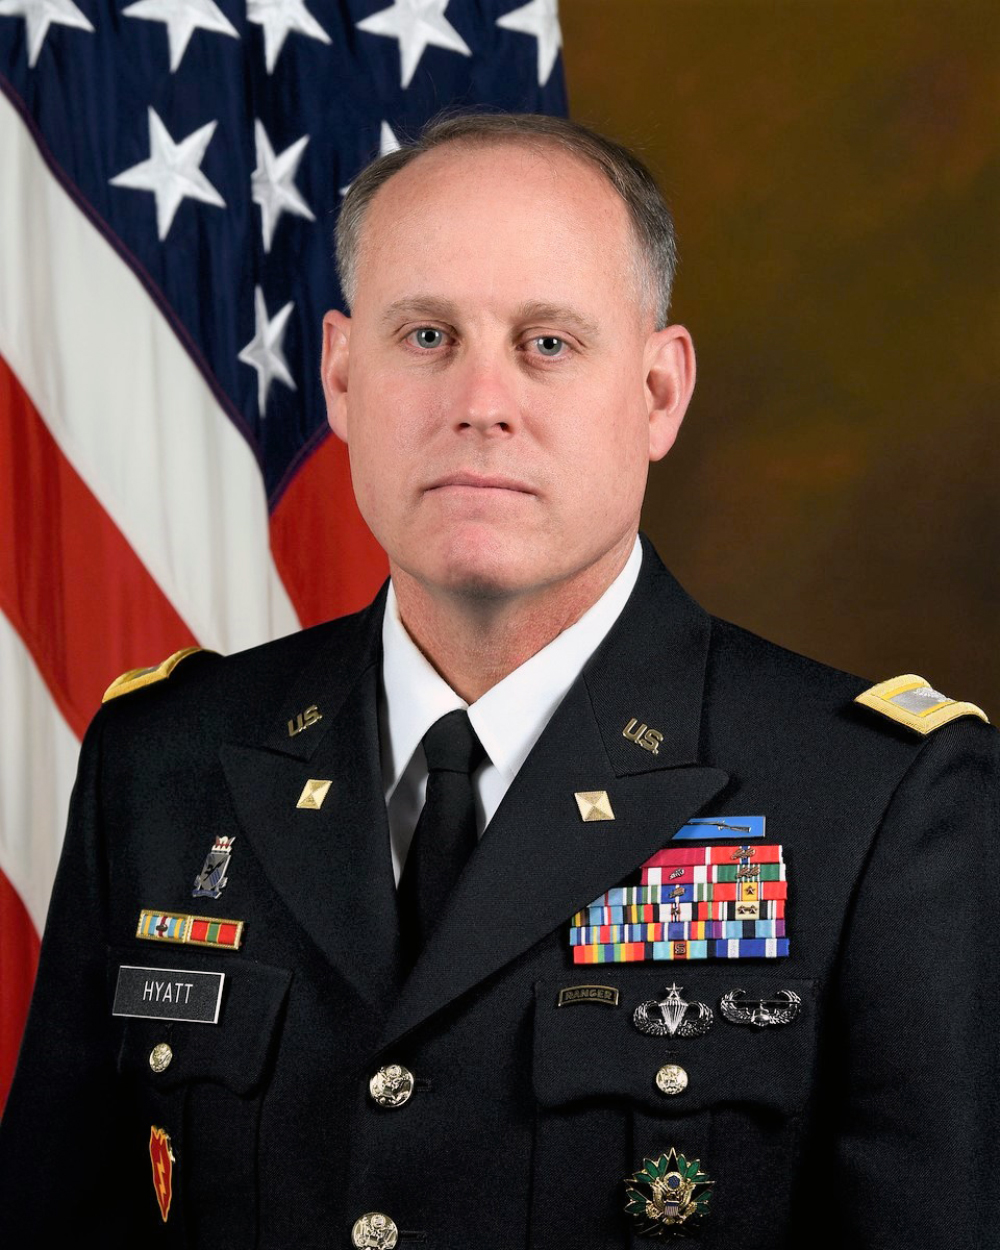 Col. Andrew Hyatt